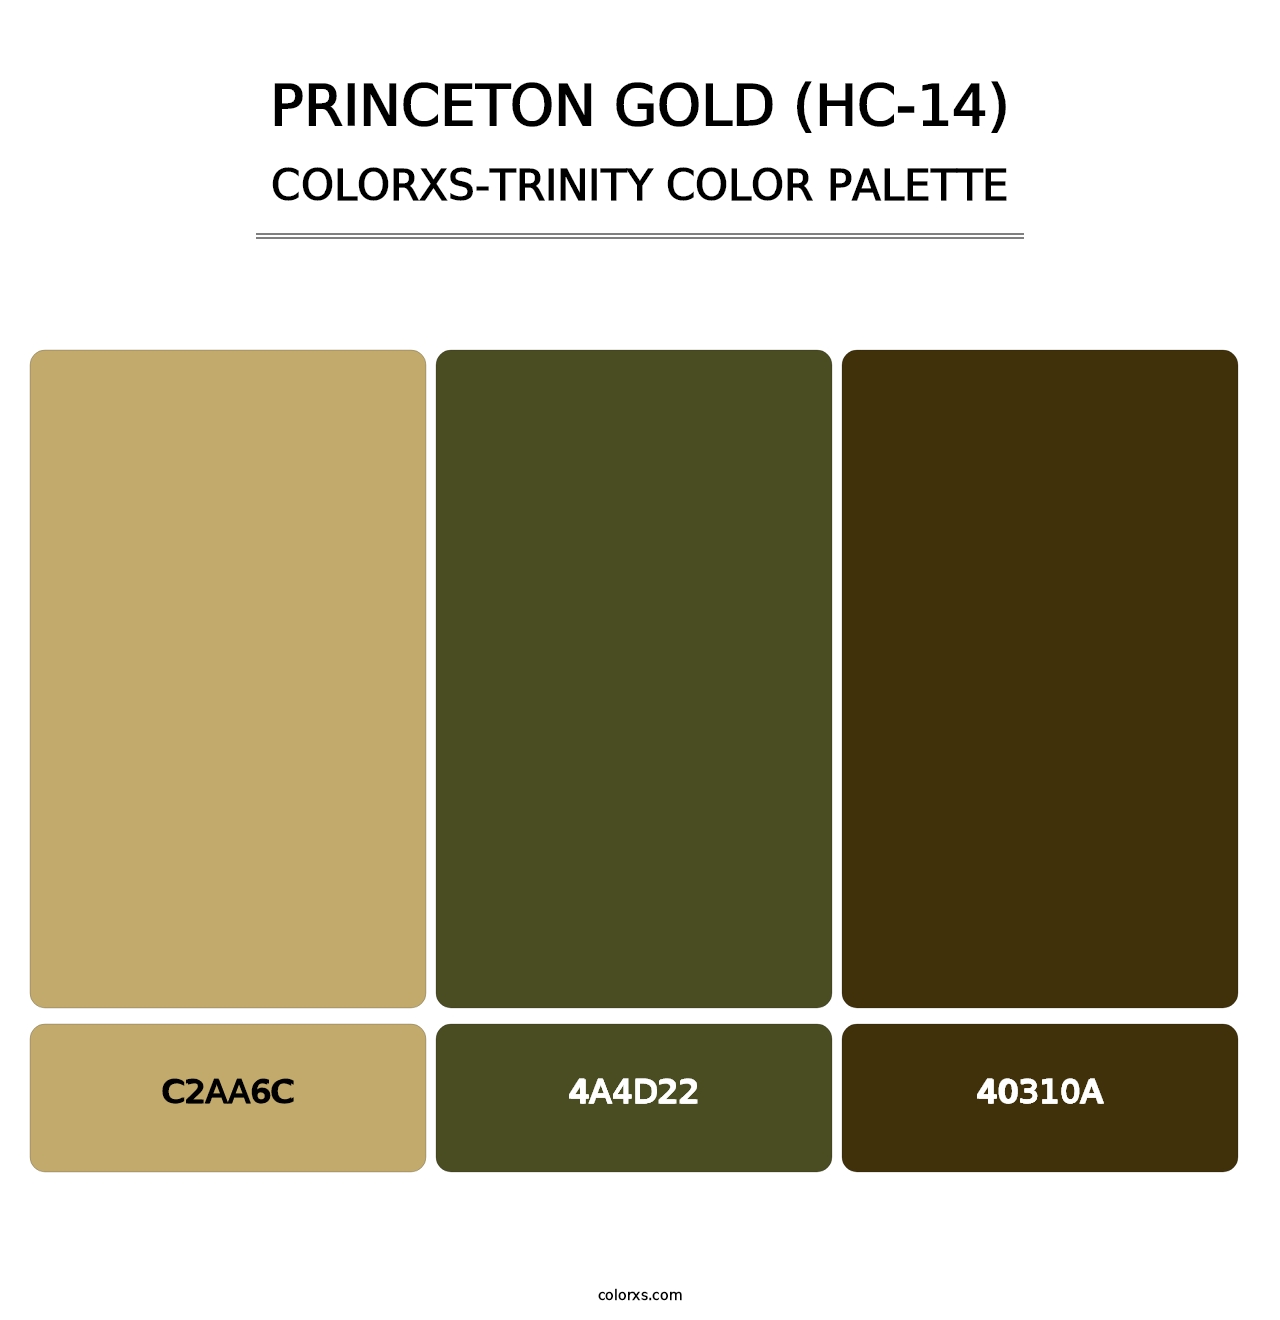 Princeton Gold (HC-14) - Colorxs Trinity Palette